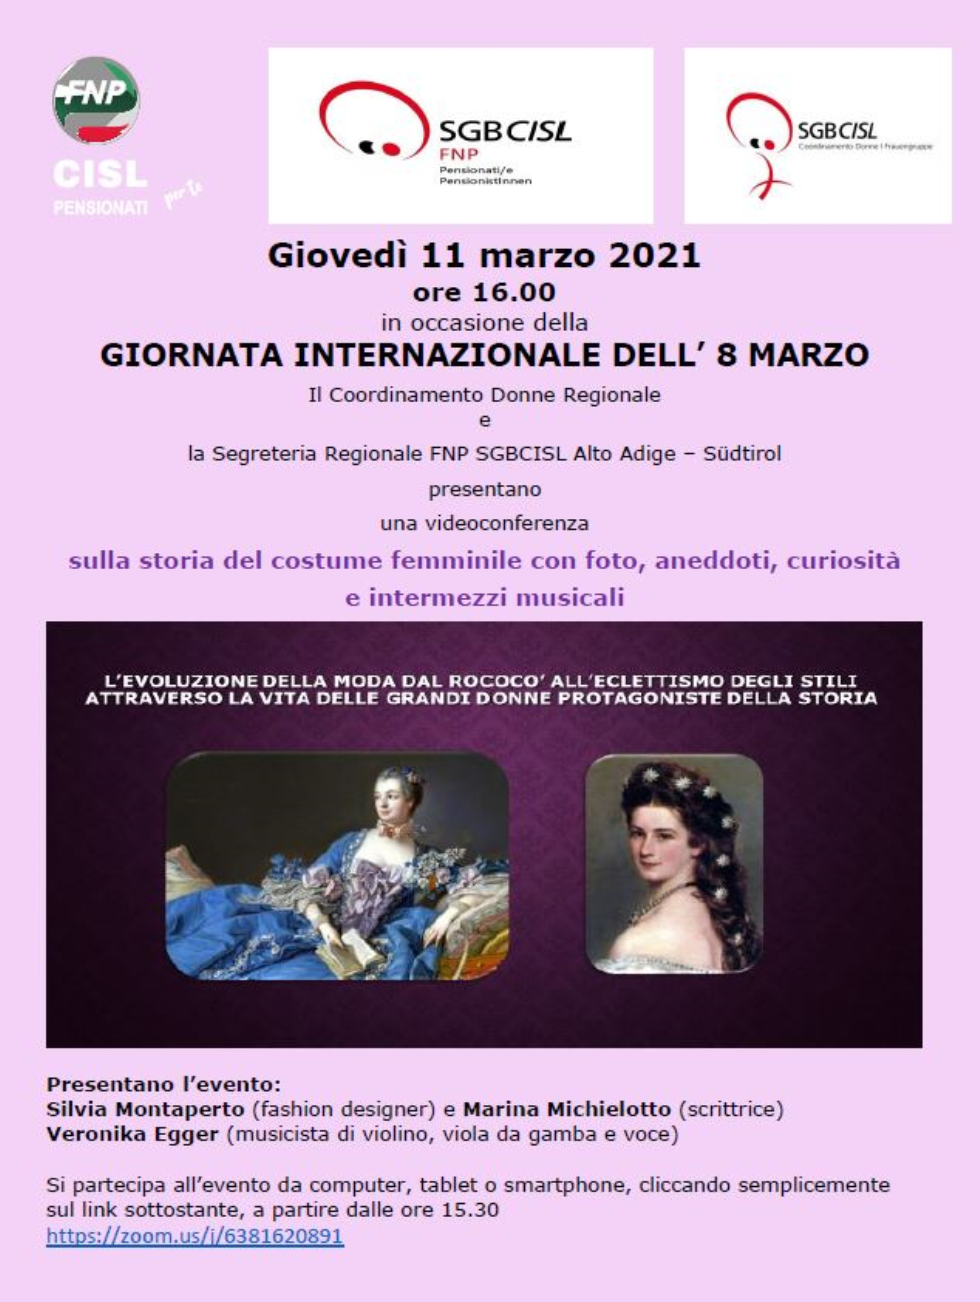 GIORNATA INTERNAZIONALE DELL’ 8 MARZO - Videoconferenza sulla storia del costume femminile con foto, aneddoti, curiosità e intermezzi musicali